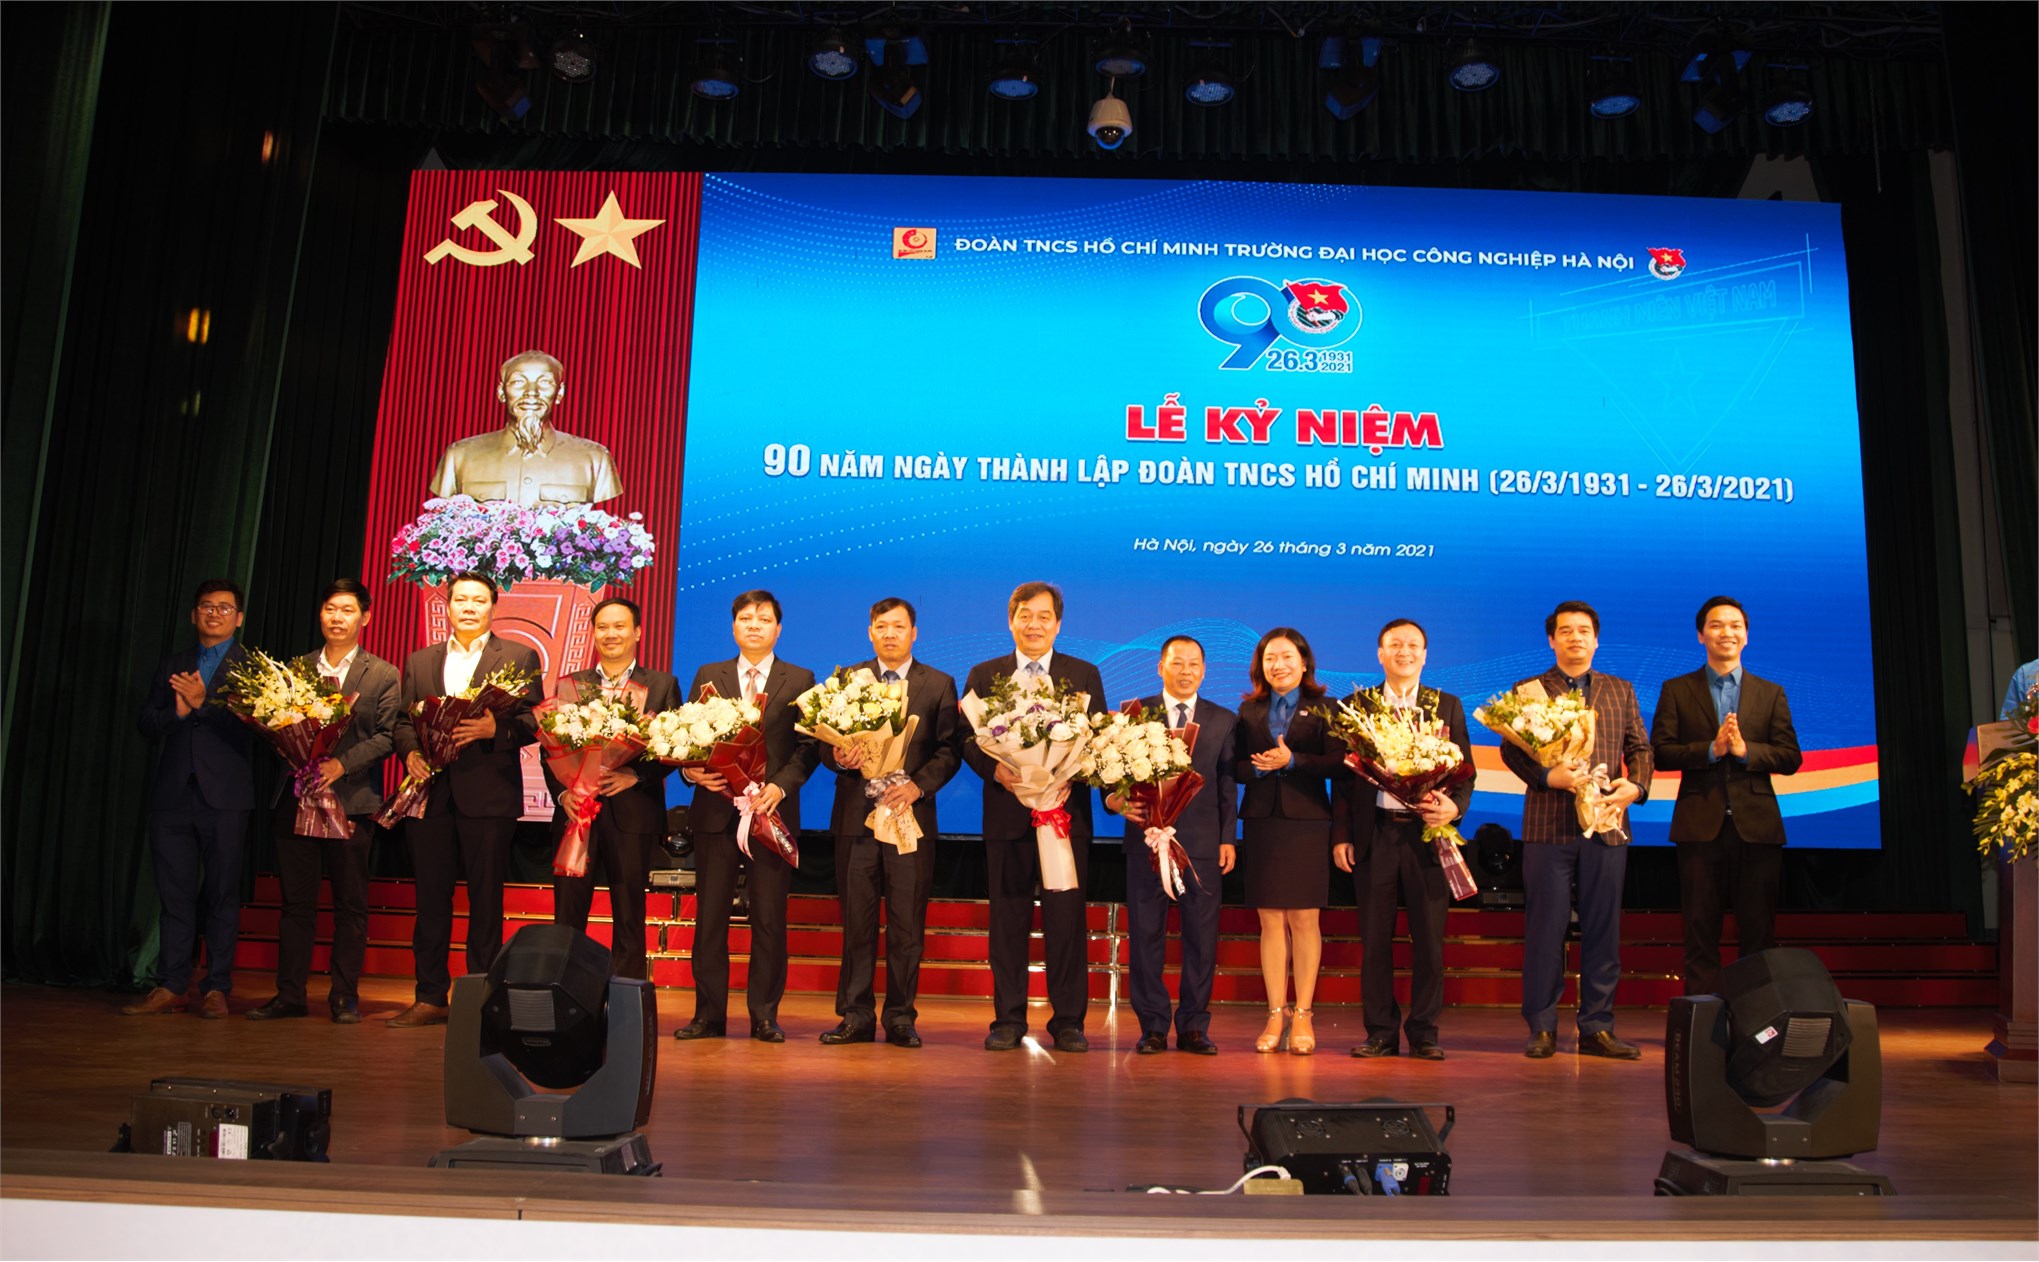 Đoàn Trường ĐHCNHN tổ chức trọng thể Lễ kỷ niệm 90 năm Ngày thành lập Đoàn TNCS Hồ Chí Minh (26/3/1931 - 26/3/2021)